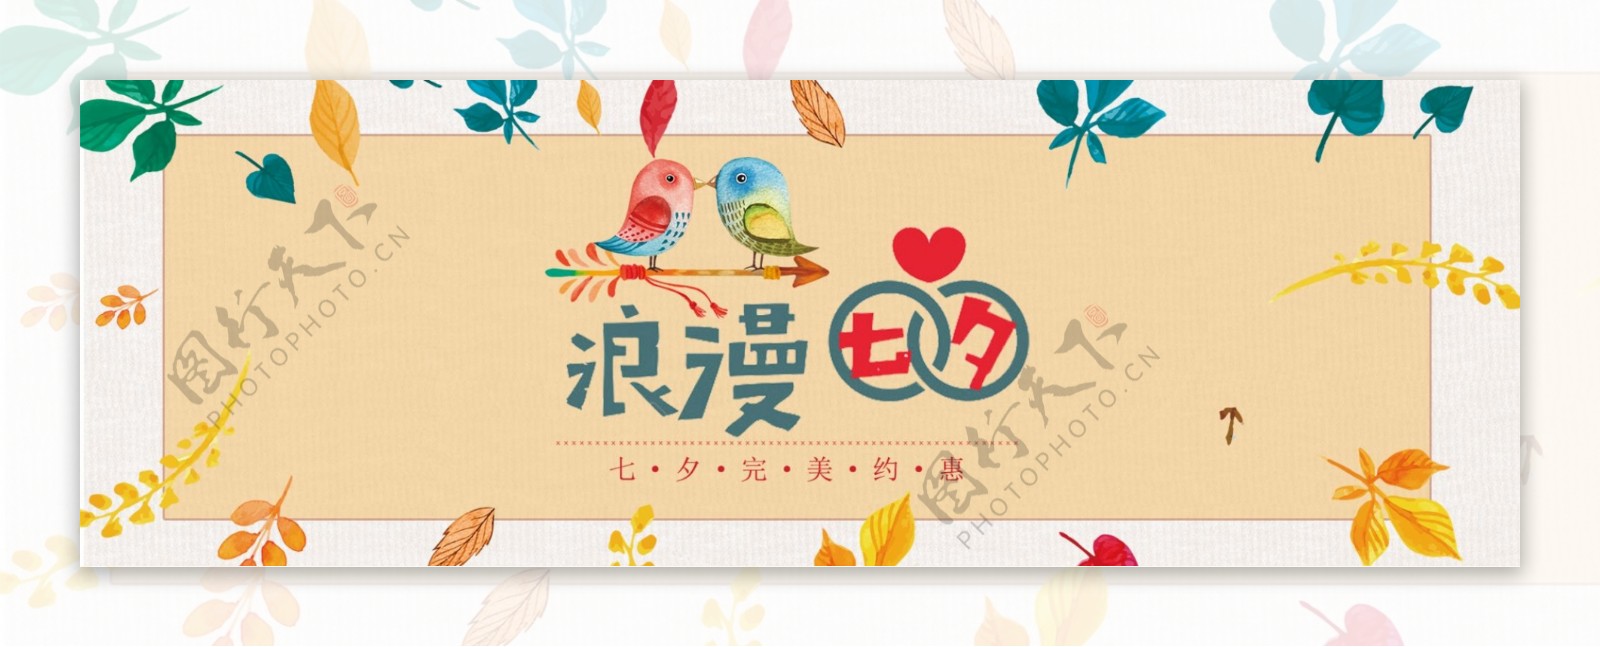 电商淘宝天猫七夕情人节促销海报banner模板设计背景素材下载模板免费